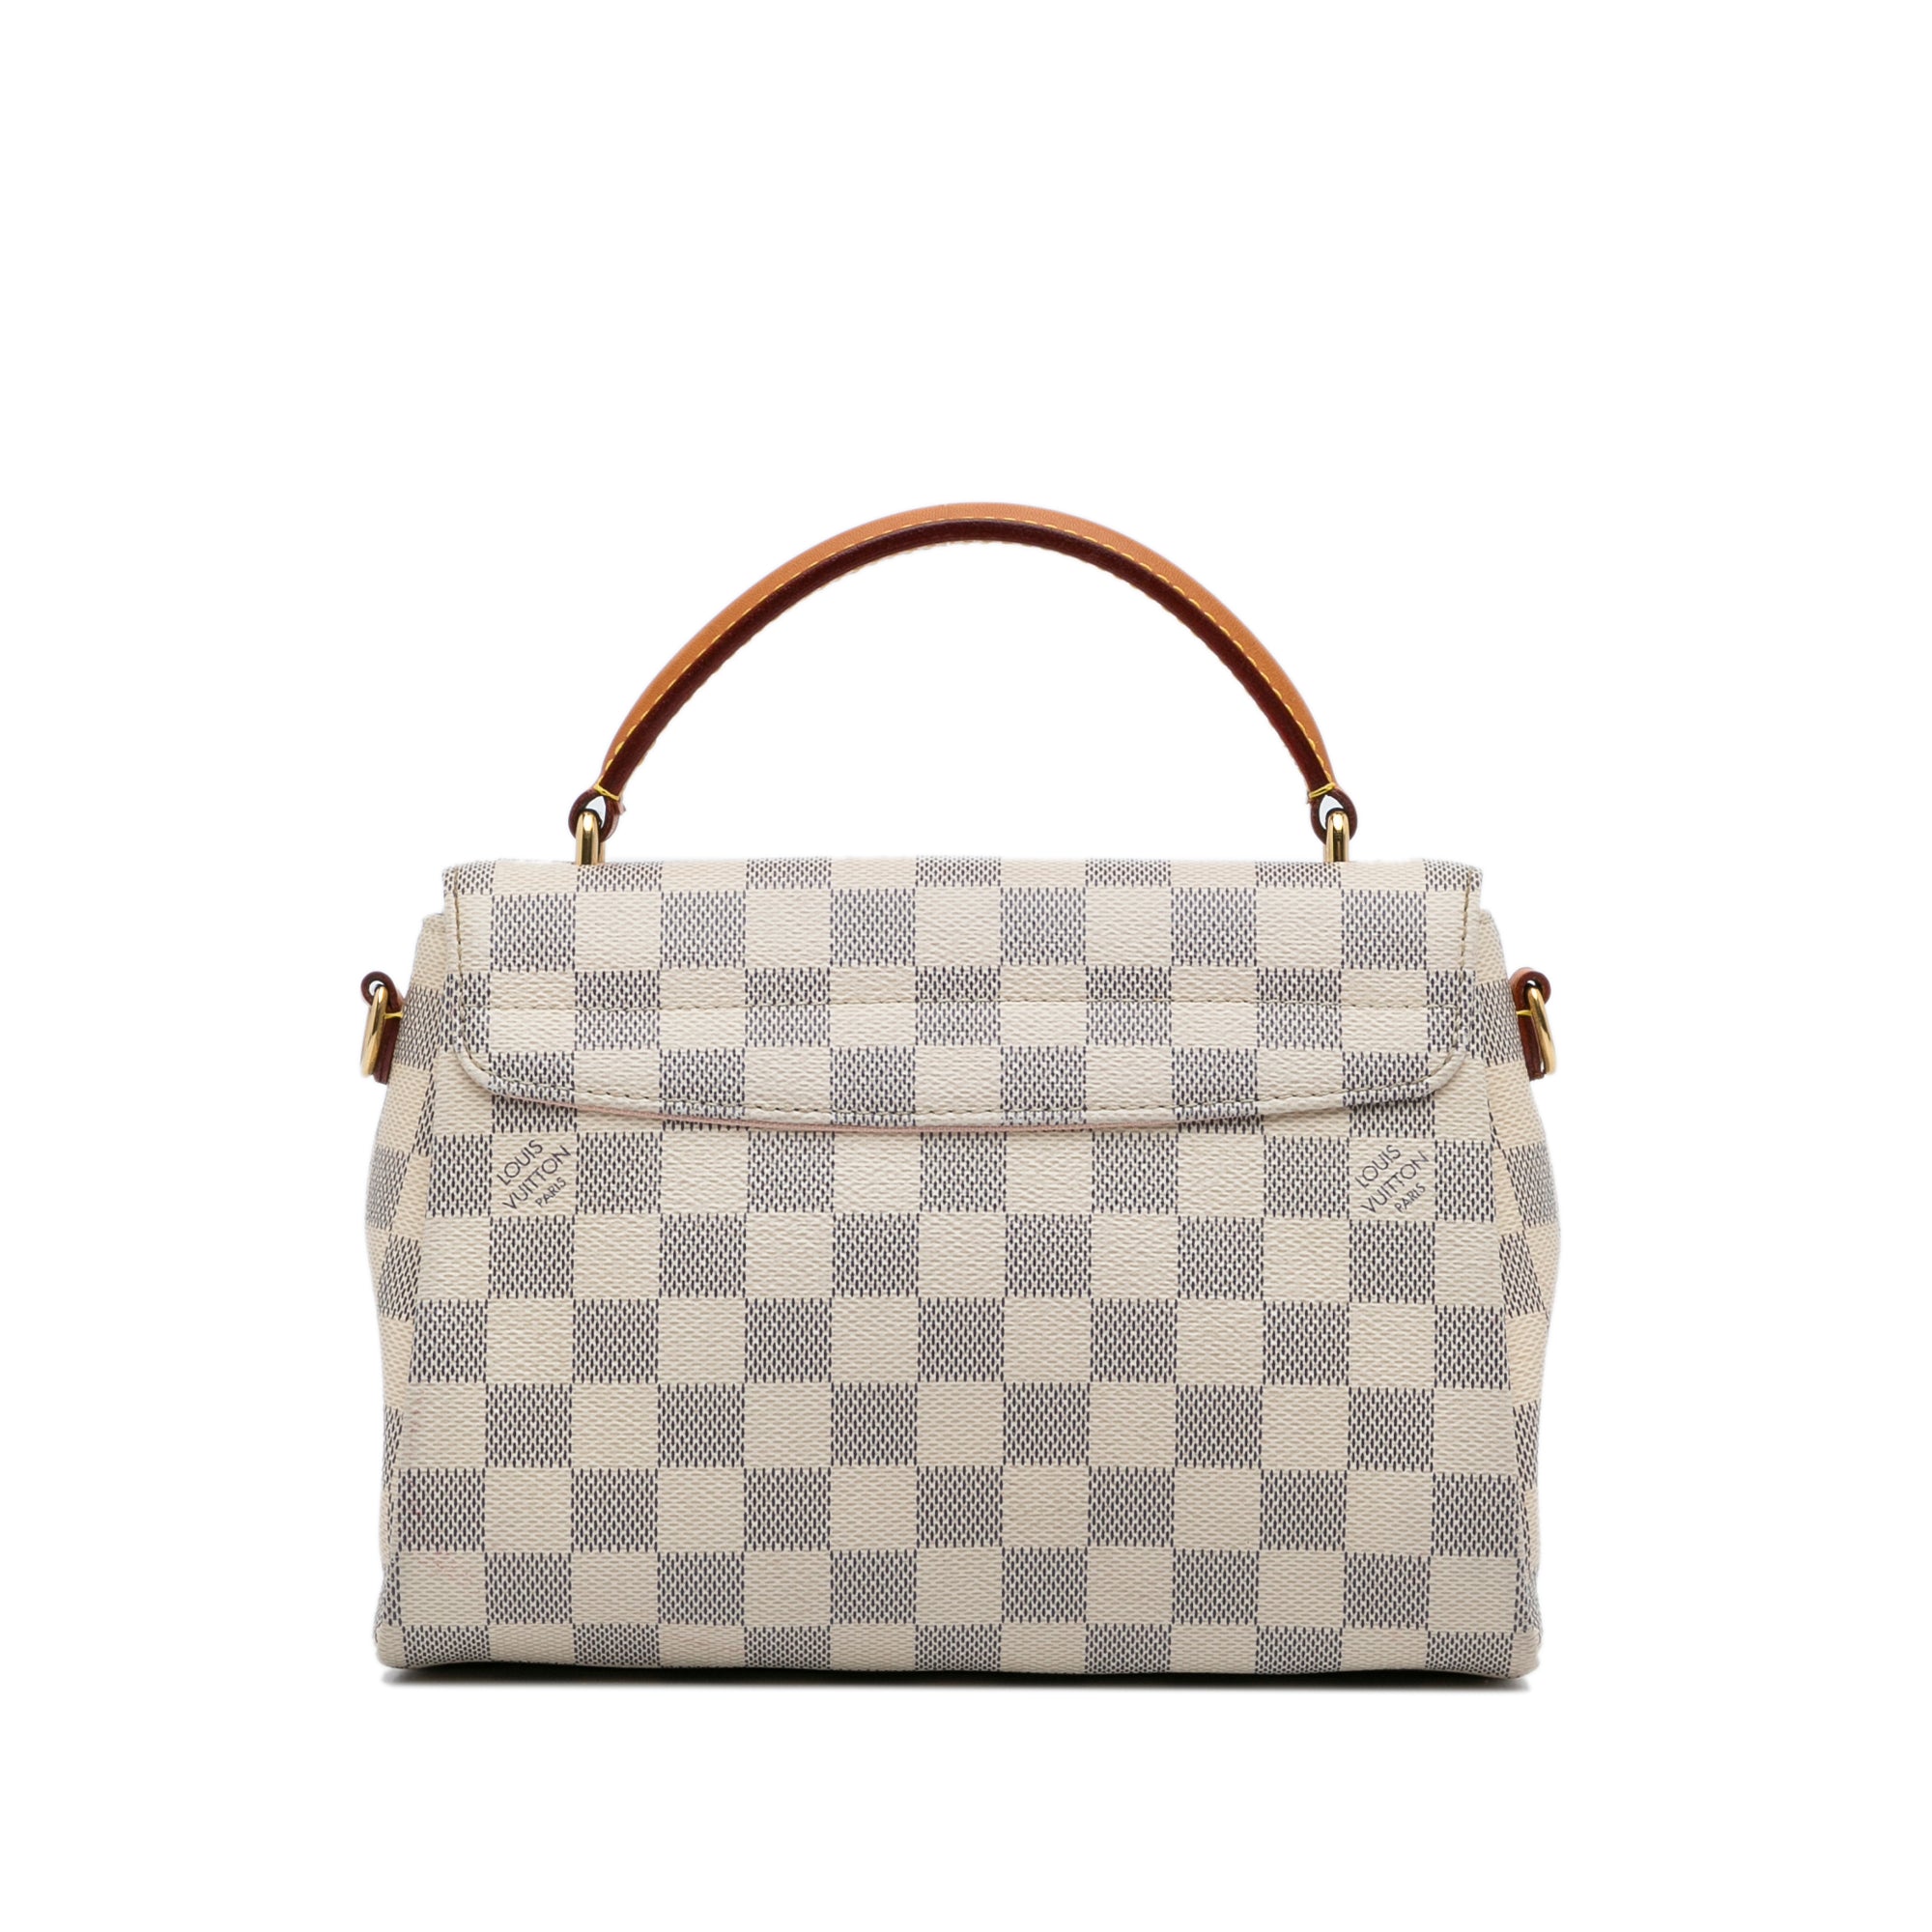 Louis Vuitton Croisette D. Azur Handbag